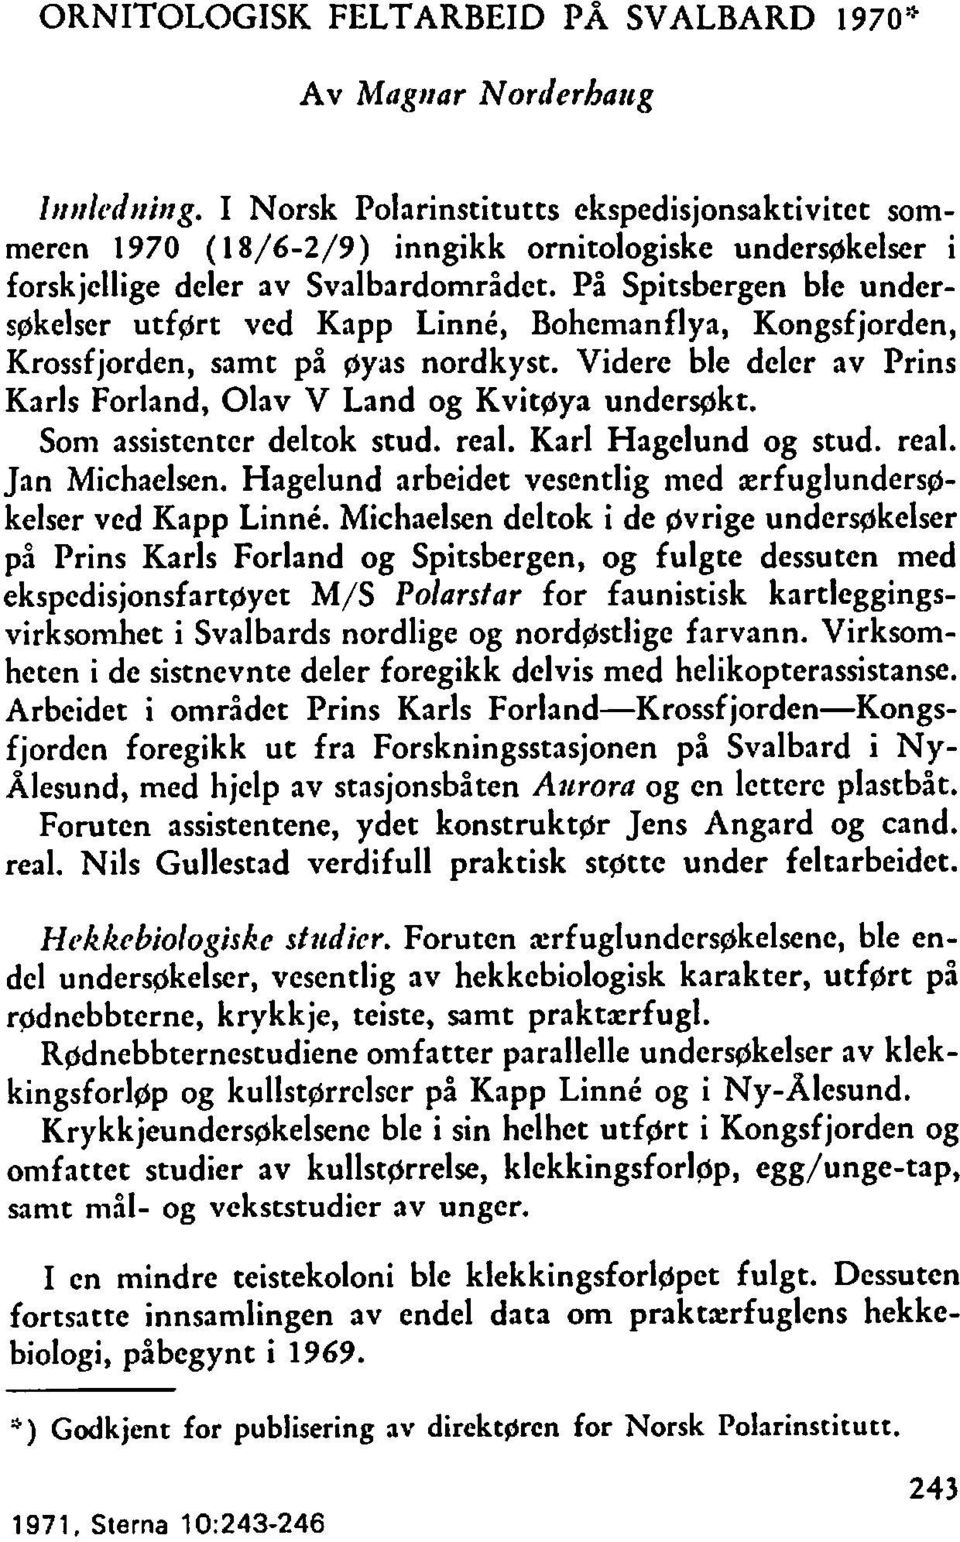 På Spitsbergen ble underrgkelser utfgrt ved Kapp Linne, Bohemanflya, Kongsfjorden, Krossfjorden, samt på gyus nordkyst. Videre ble deler av Prins Karls Forland, Olav V Land og Kvit~ya underakt.